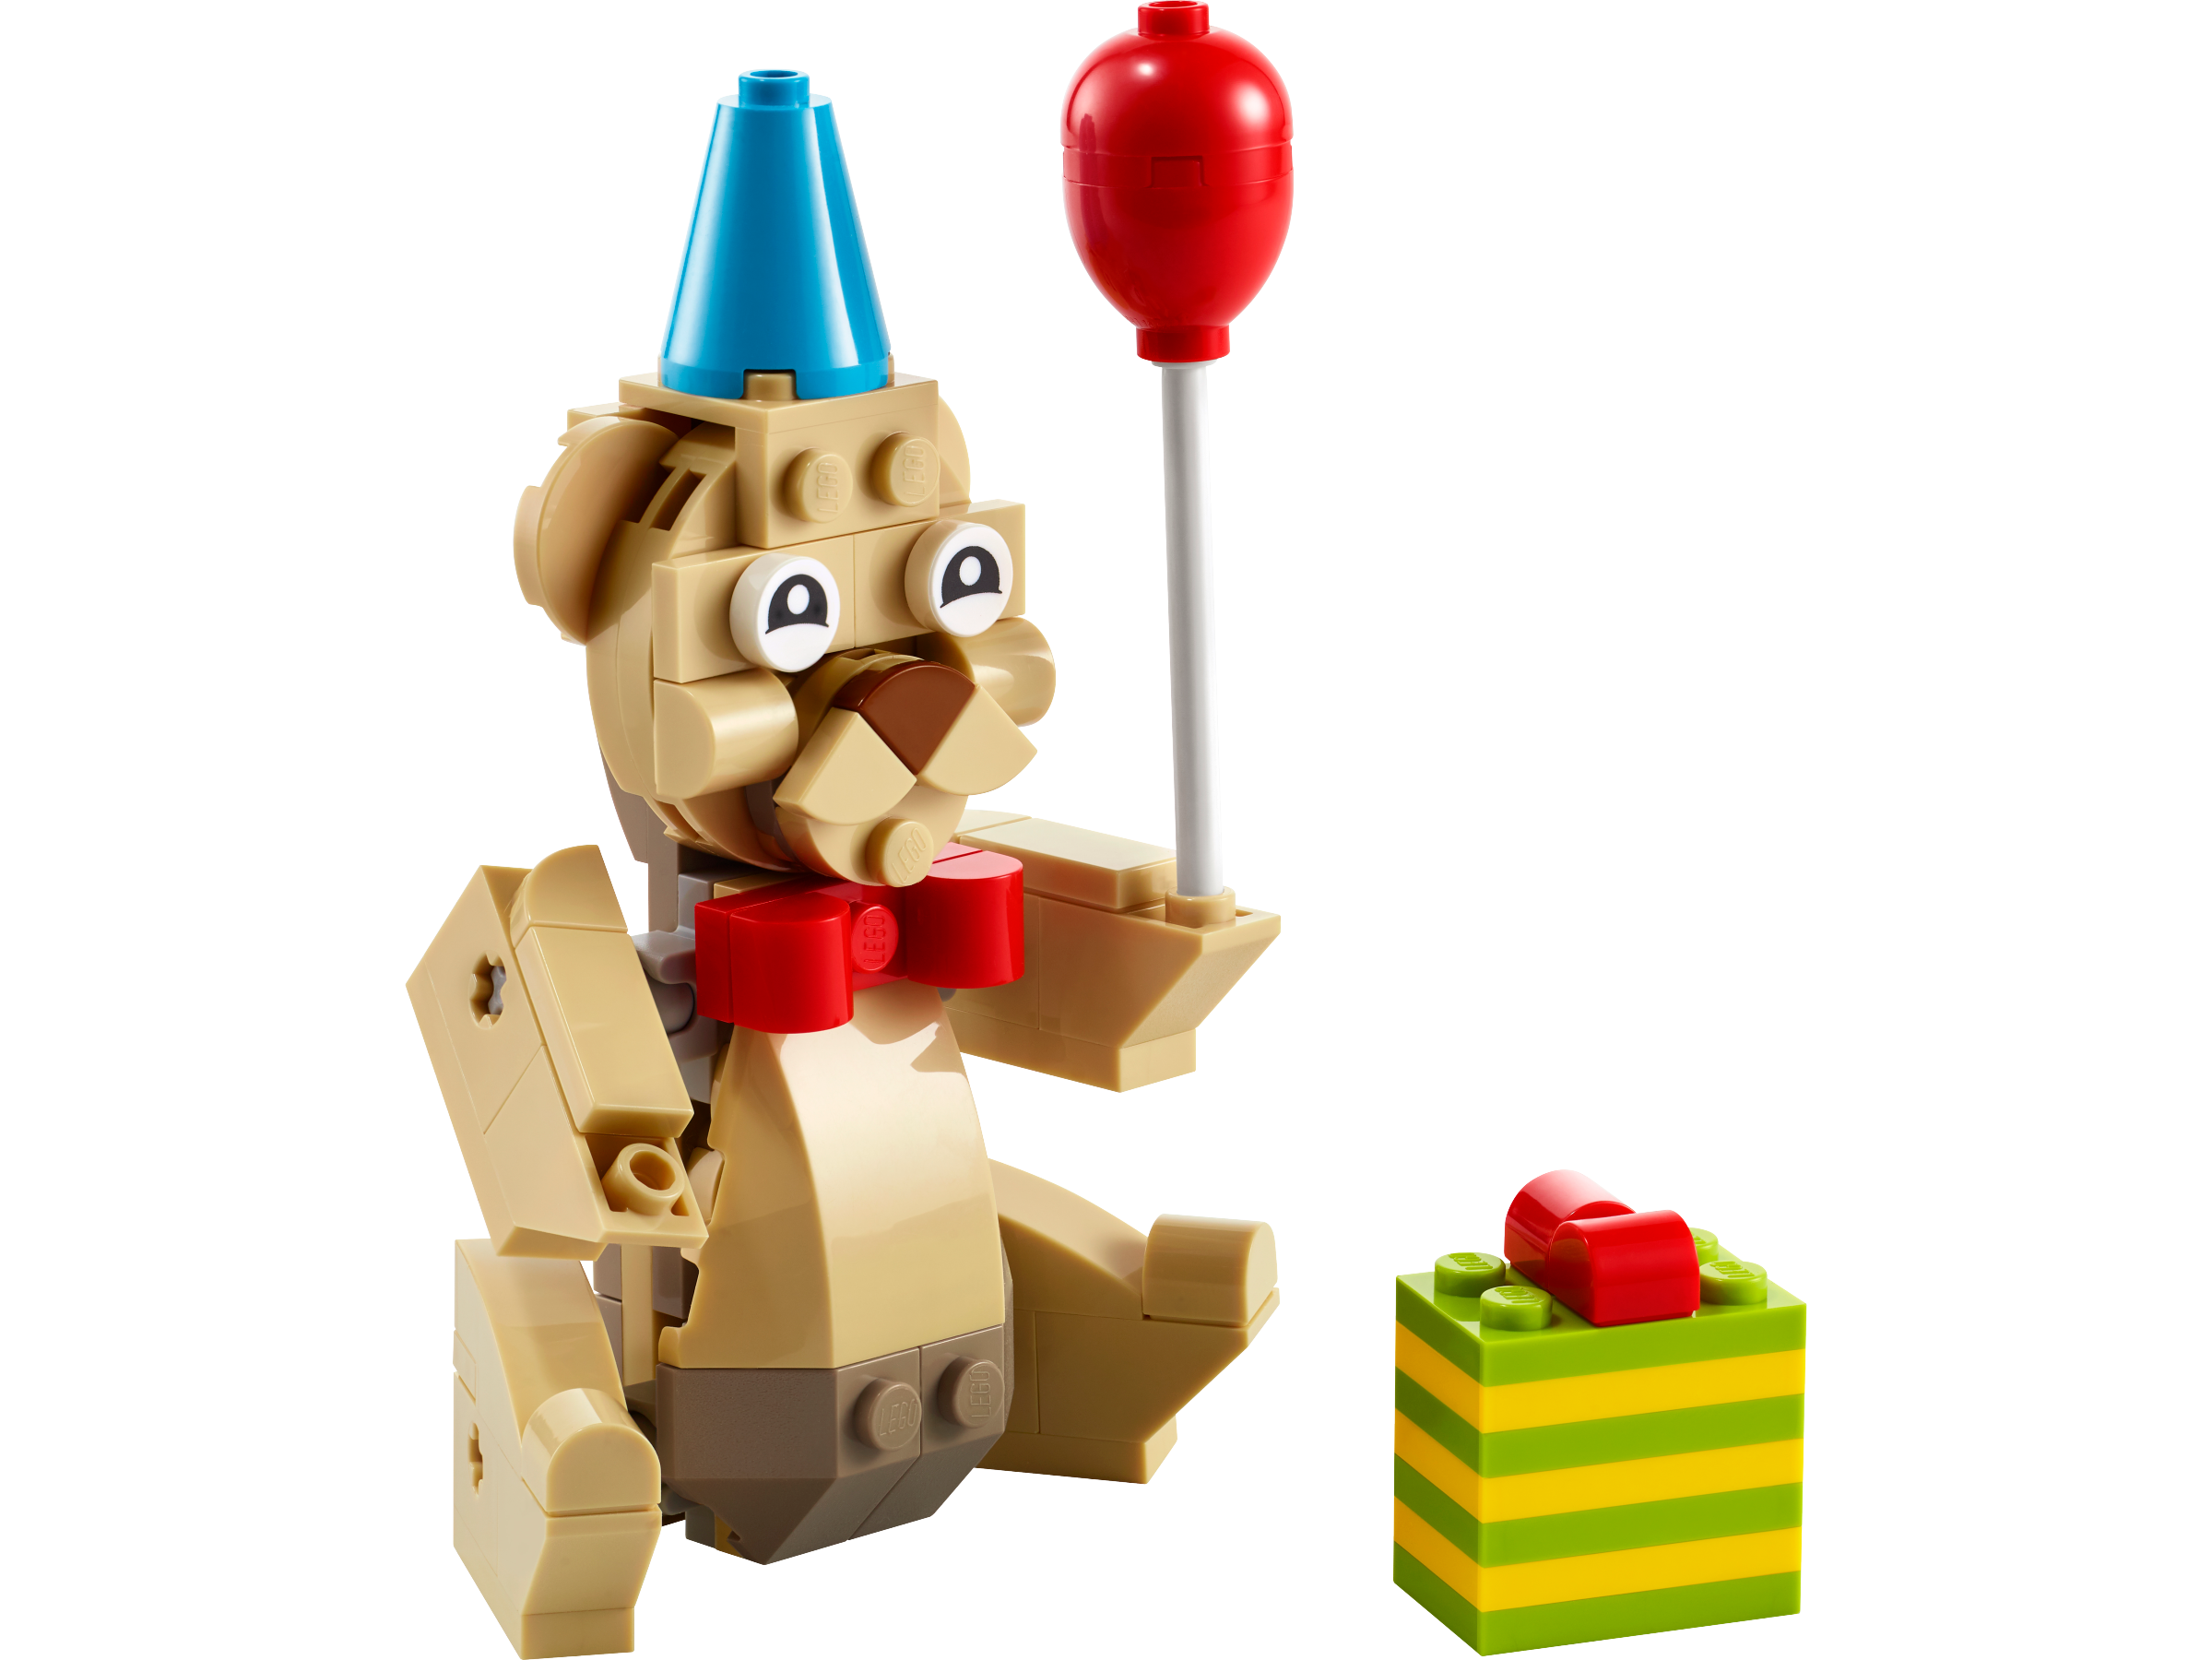 Lego Gấu Bearbrick 33cm Xanh – Hồng có Trái tim ở Bụng